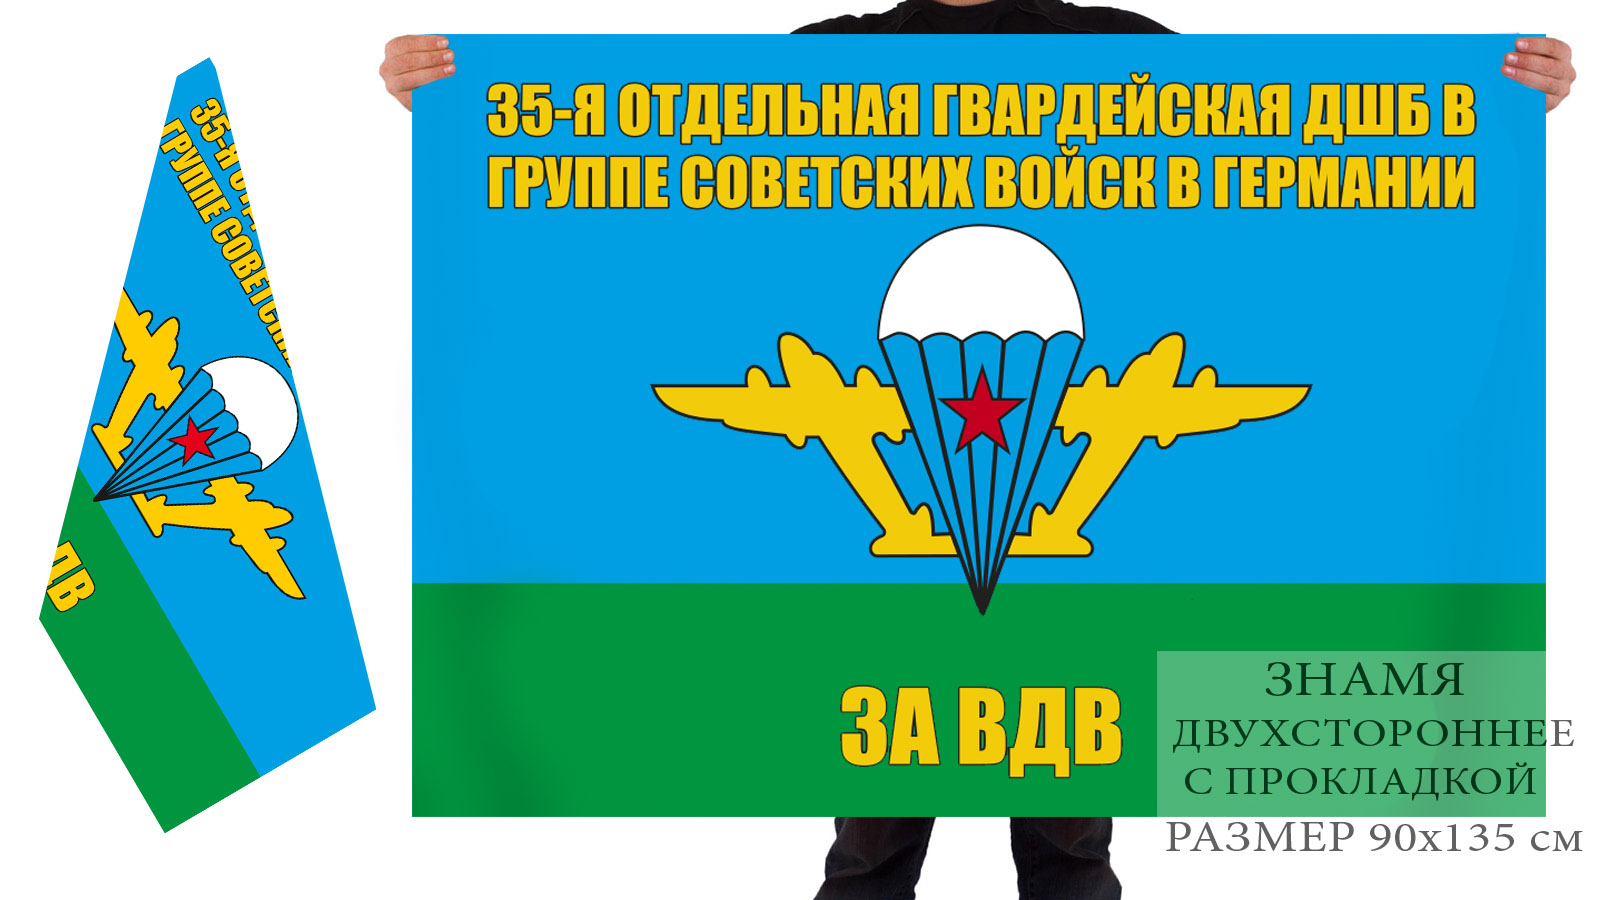 Двусторонний флаг ВДВ 35 отдельной гвардейской ДШБ в ГСВГ